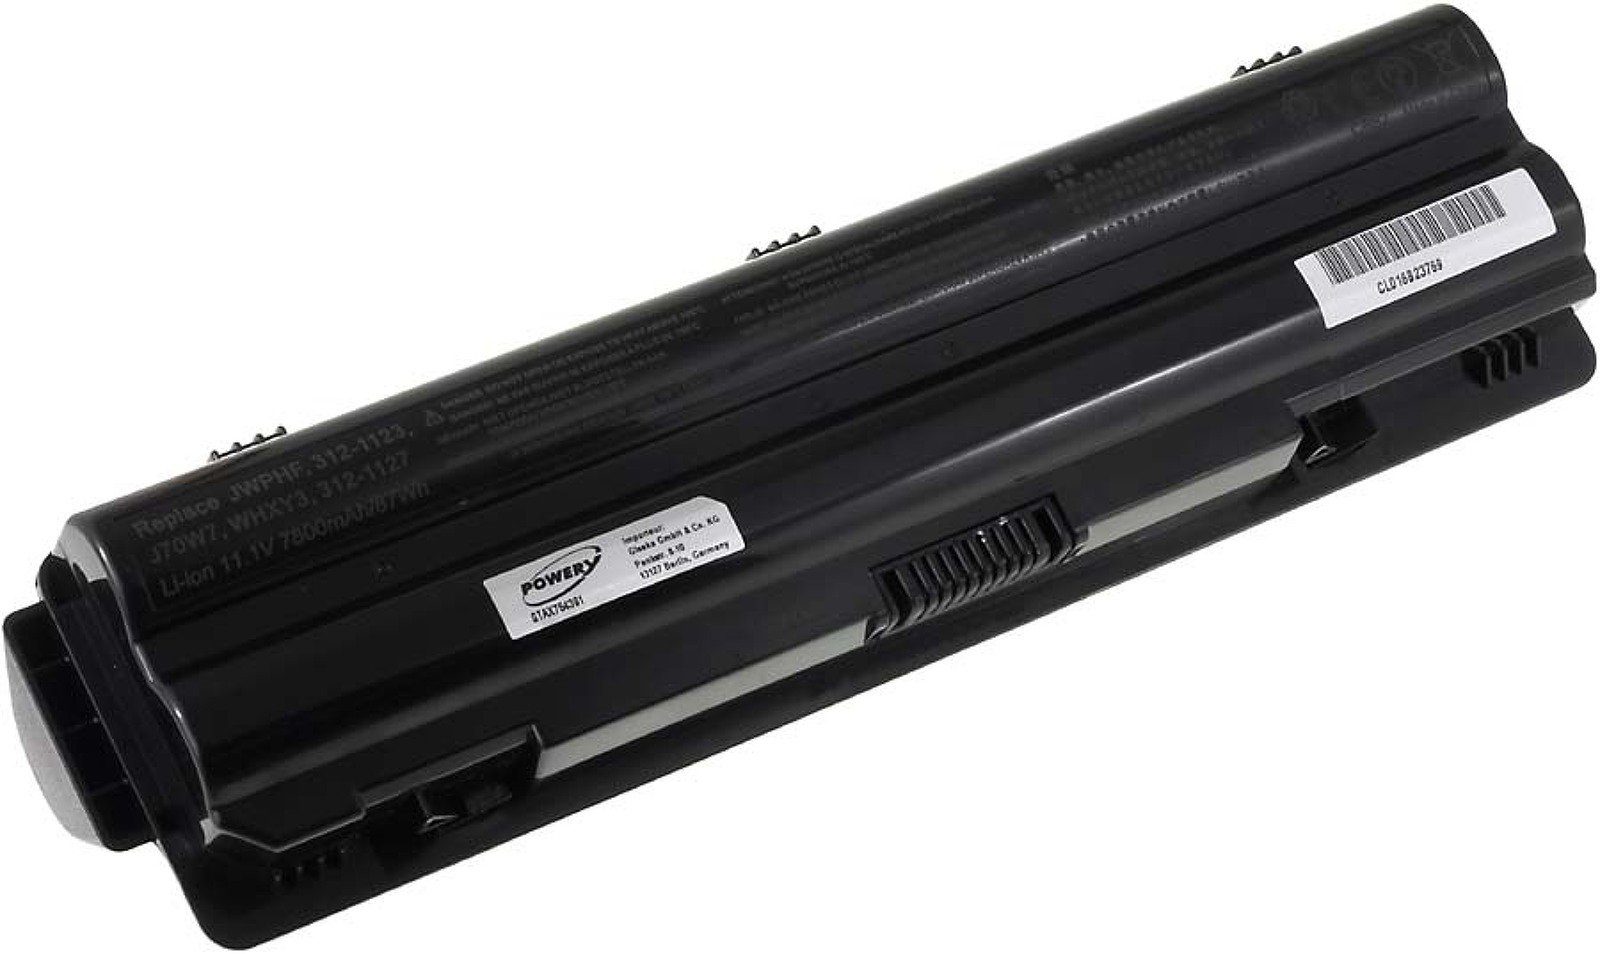 L702X Dell Laptop-Akku Akku 7800 mAh (11.1 XPS Powery V) für